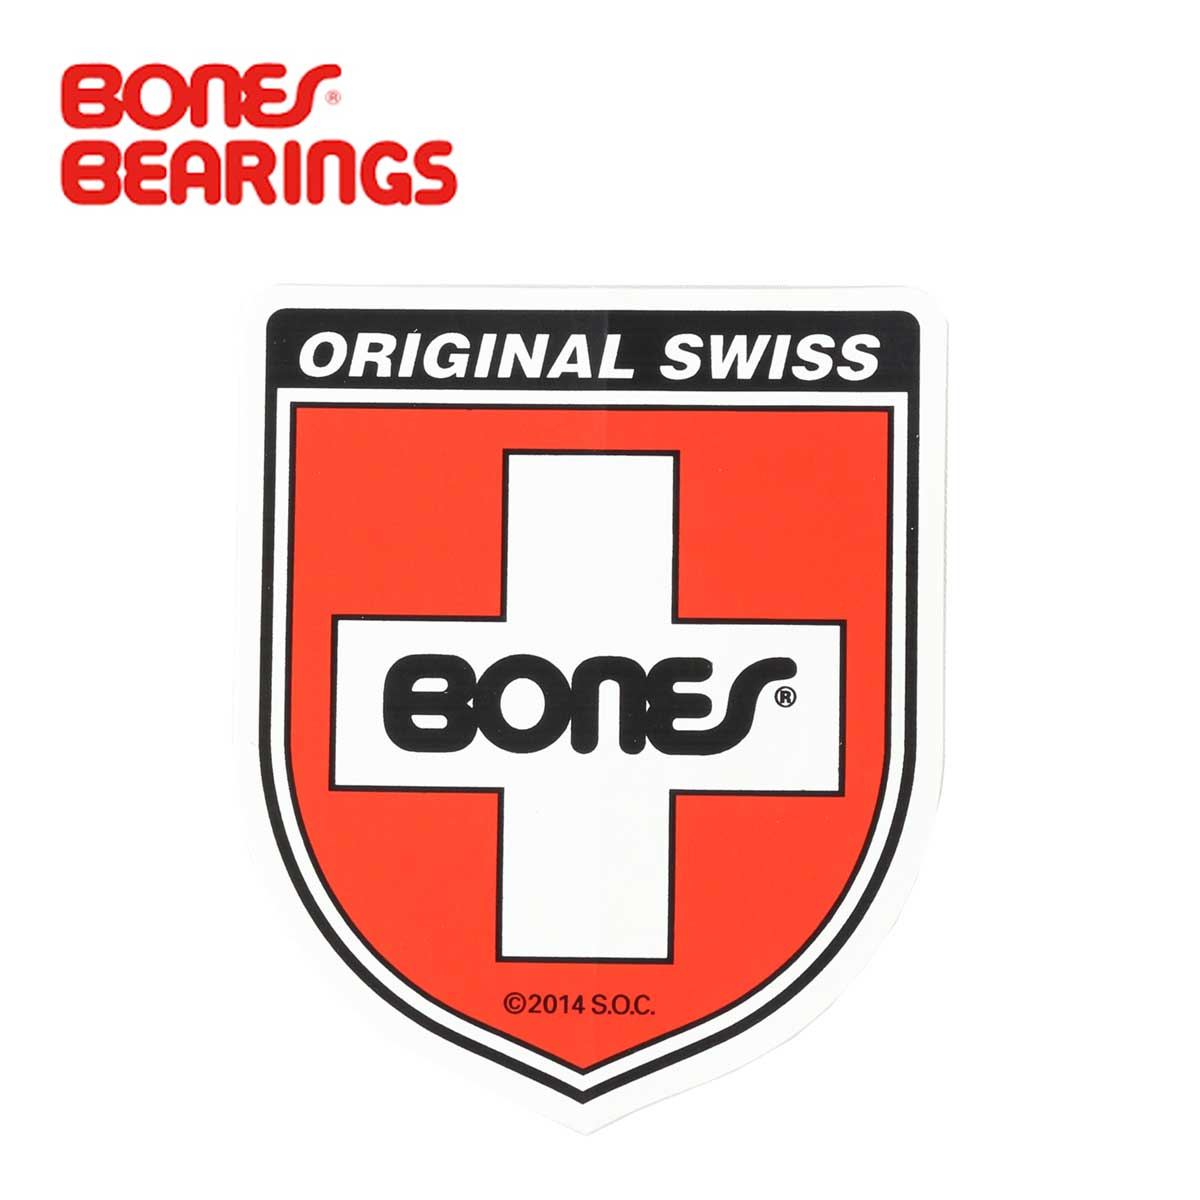 Bones ボーンズ Bearings Swiss Shield SM ステッカー 5cmx6cm スケートボード スケボー スケート シール